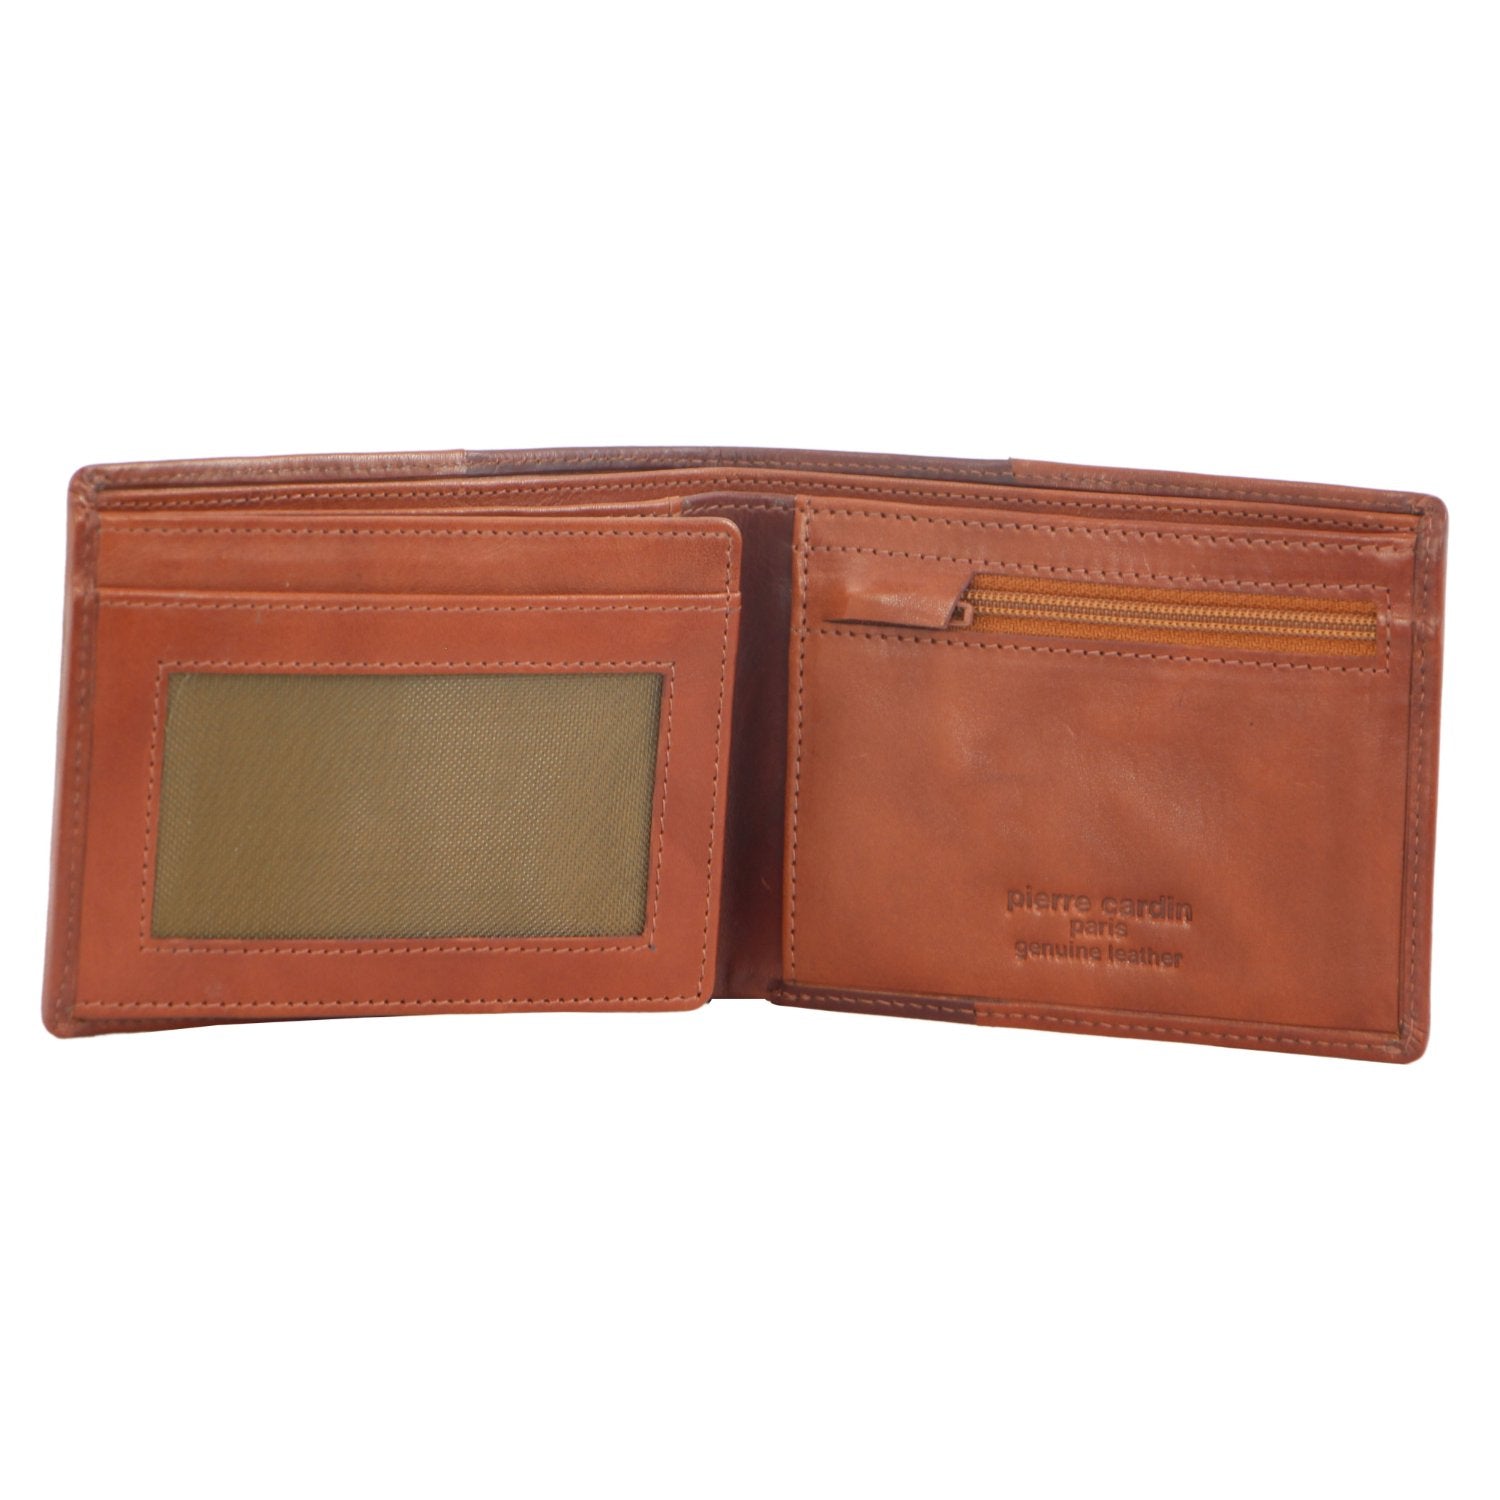 Pierre Cardin Leather Men's Bi-Fold Wallet in Cognac